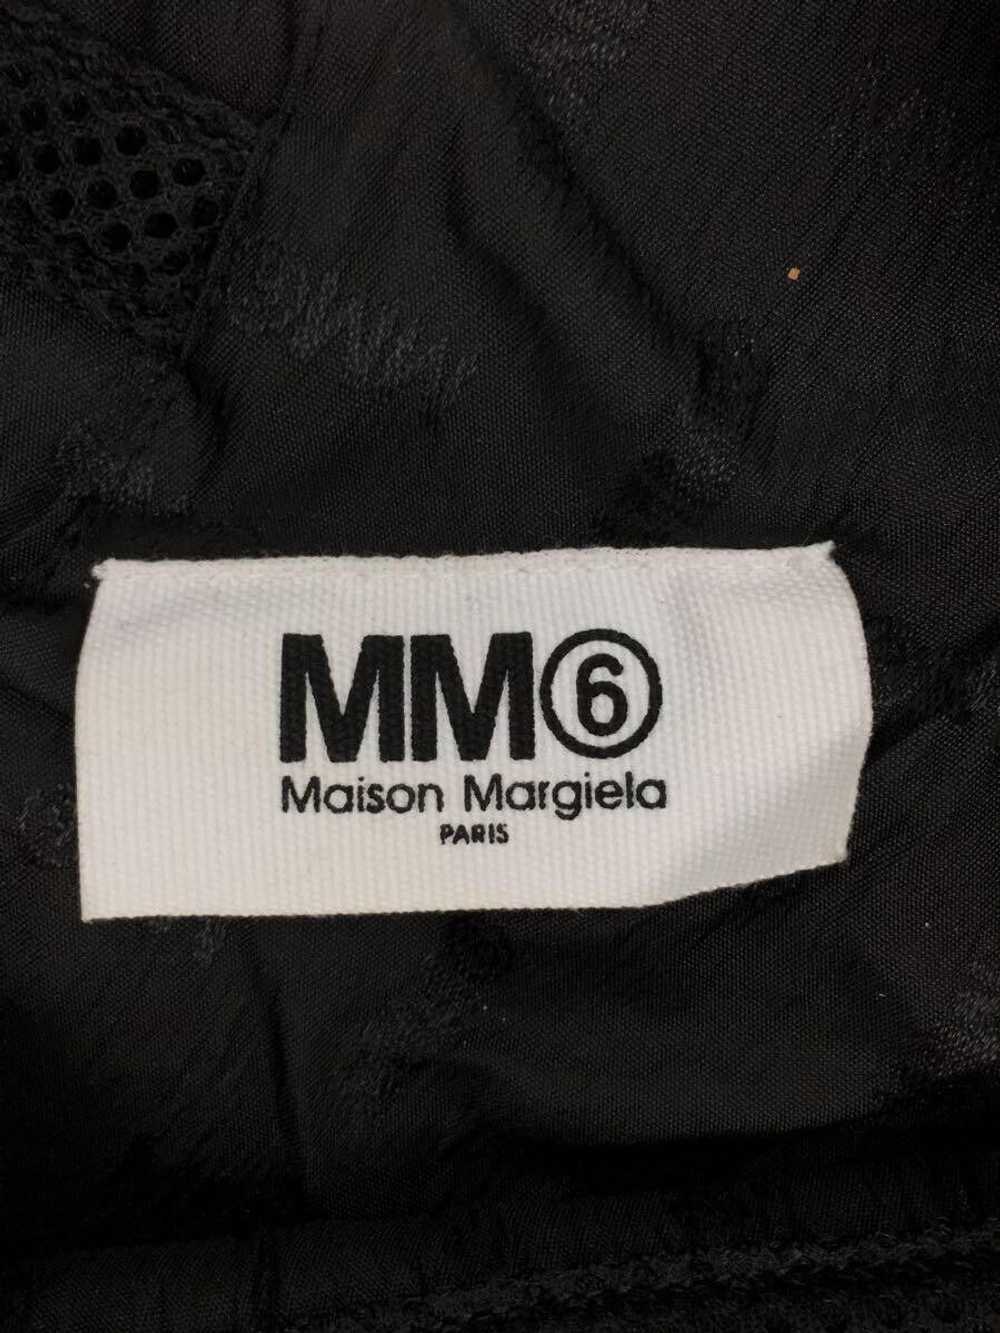 Maison Margiela Japanese Mesh Tote Bag - image 3